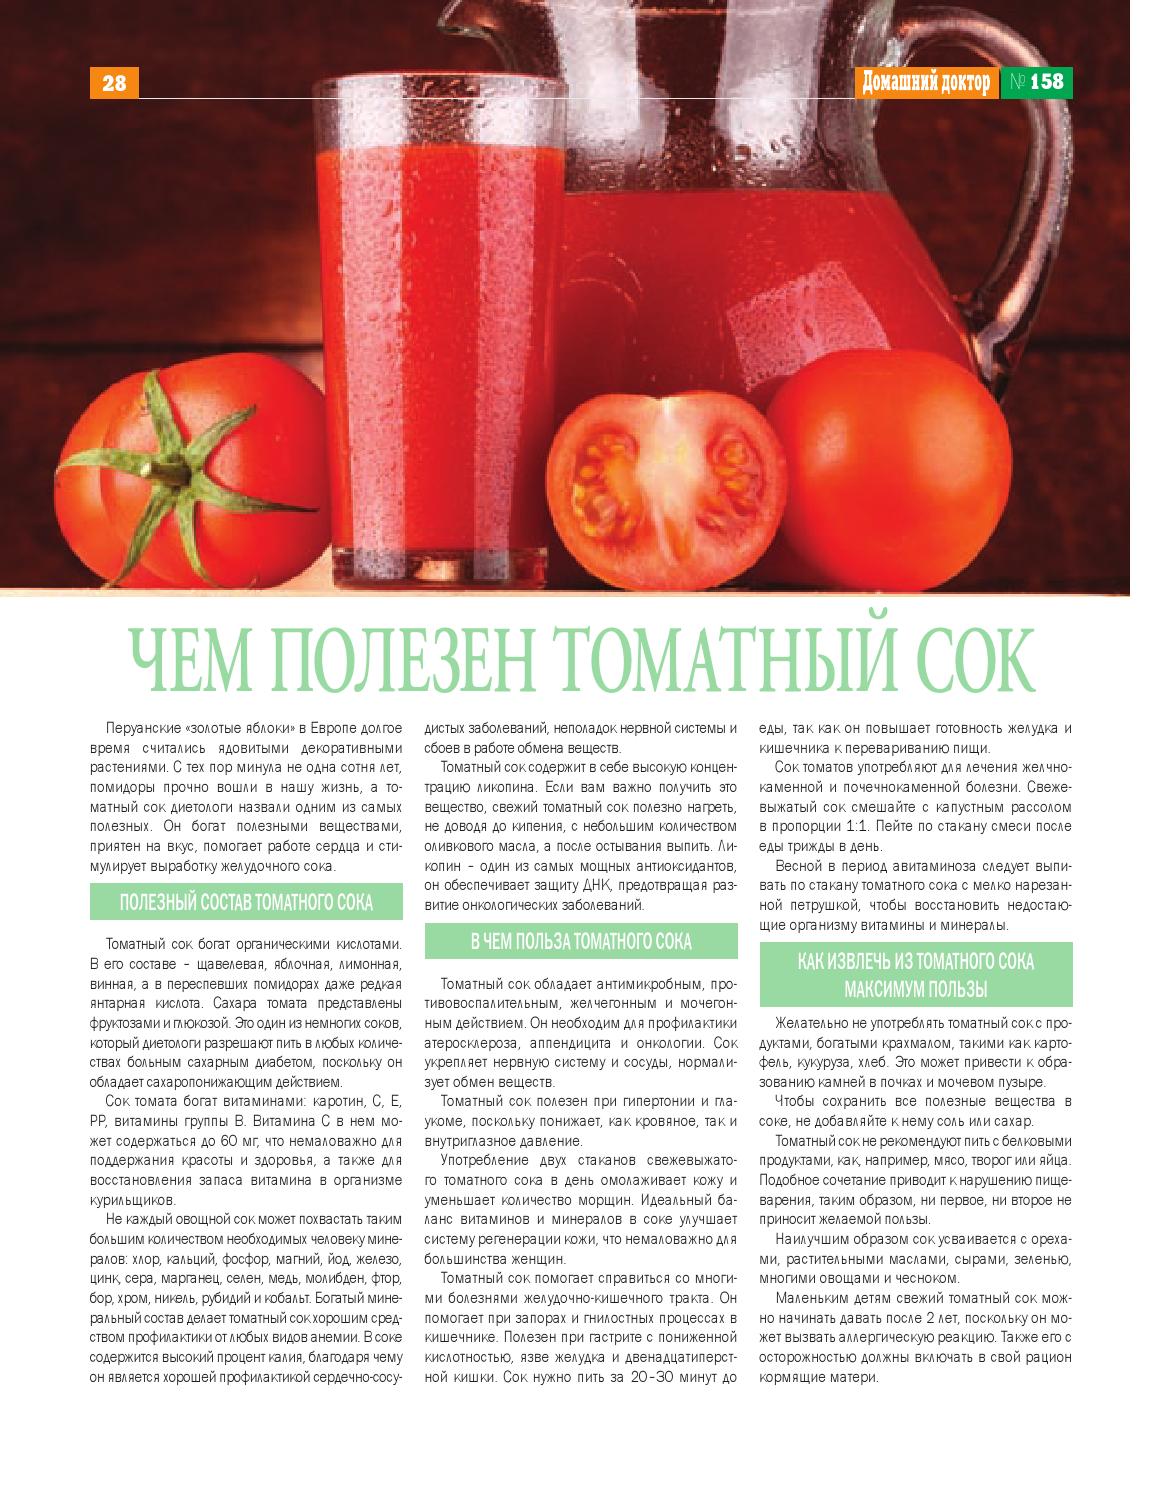 В чем польза и вред свежих томатов и всех его производных при беременности: можно ли пить сок, кушать соленые и бочковые томаты